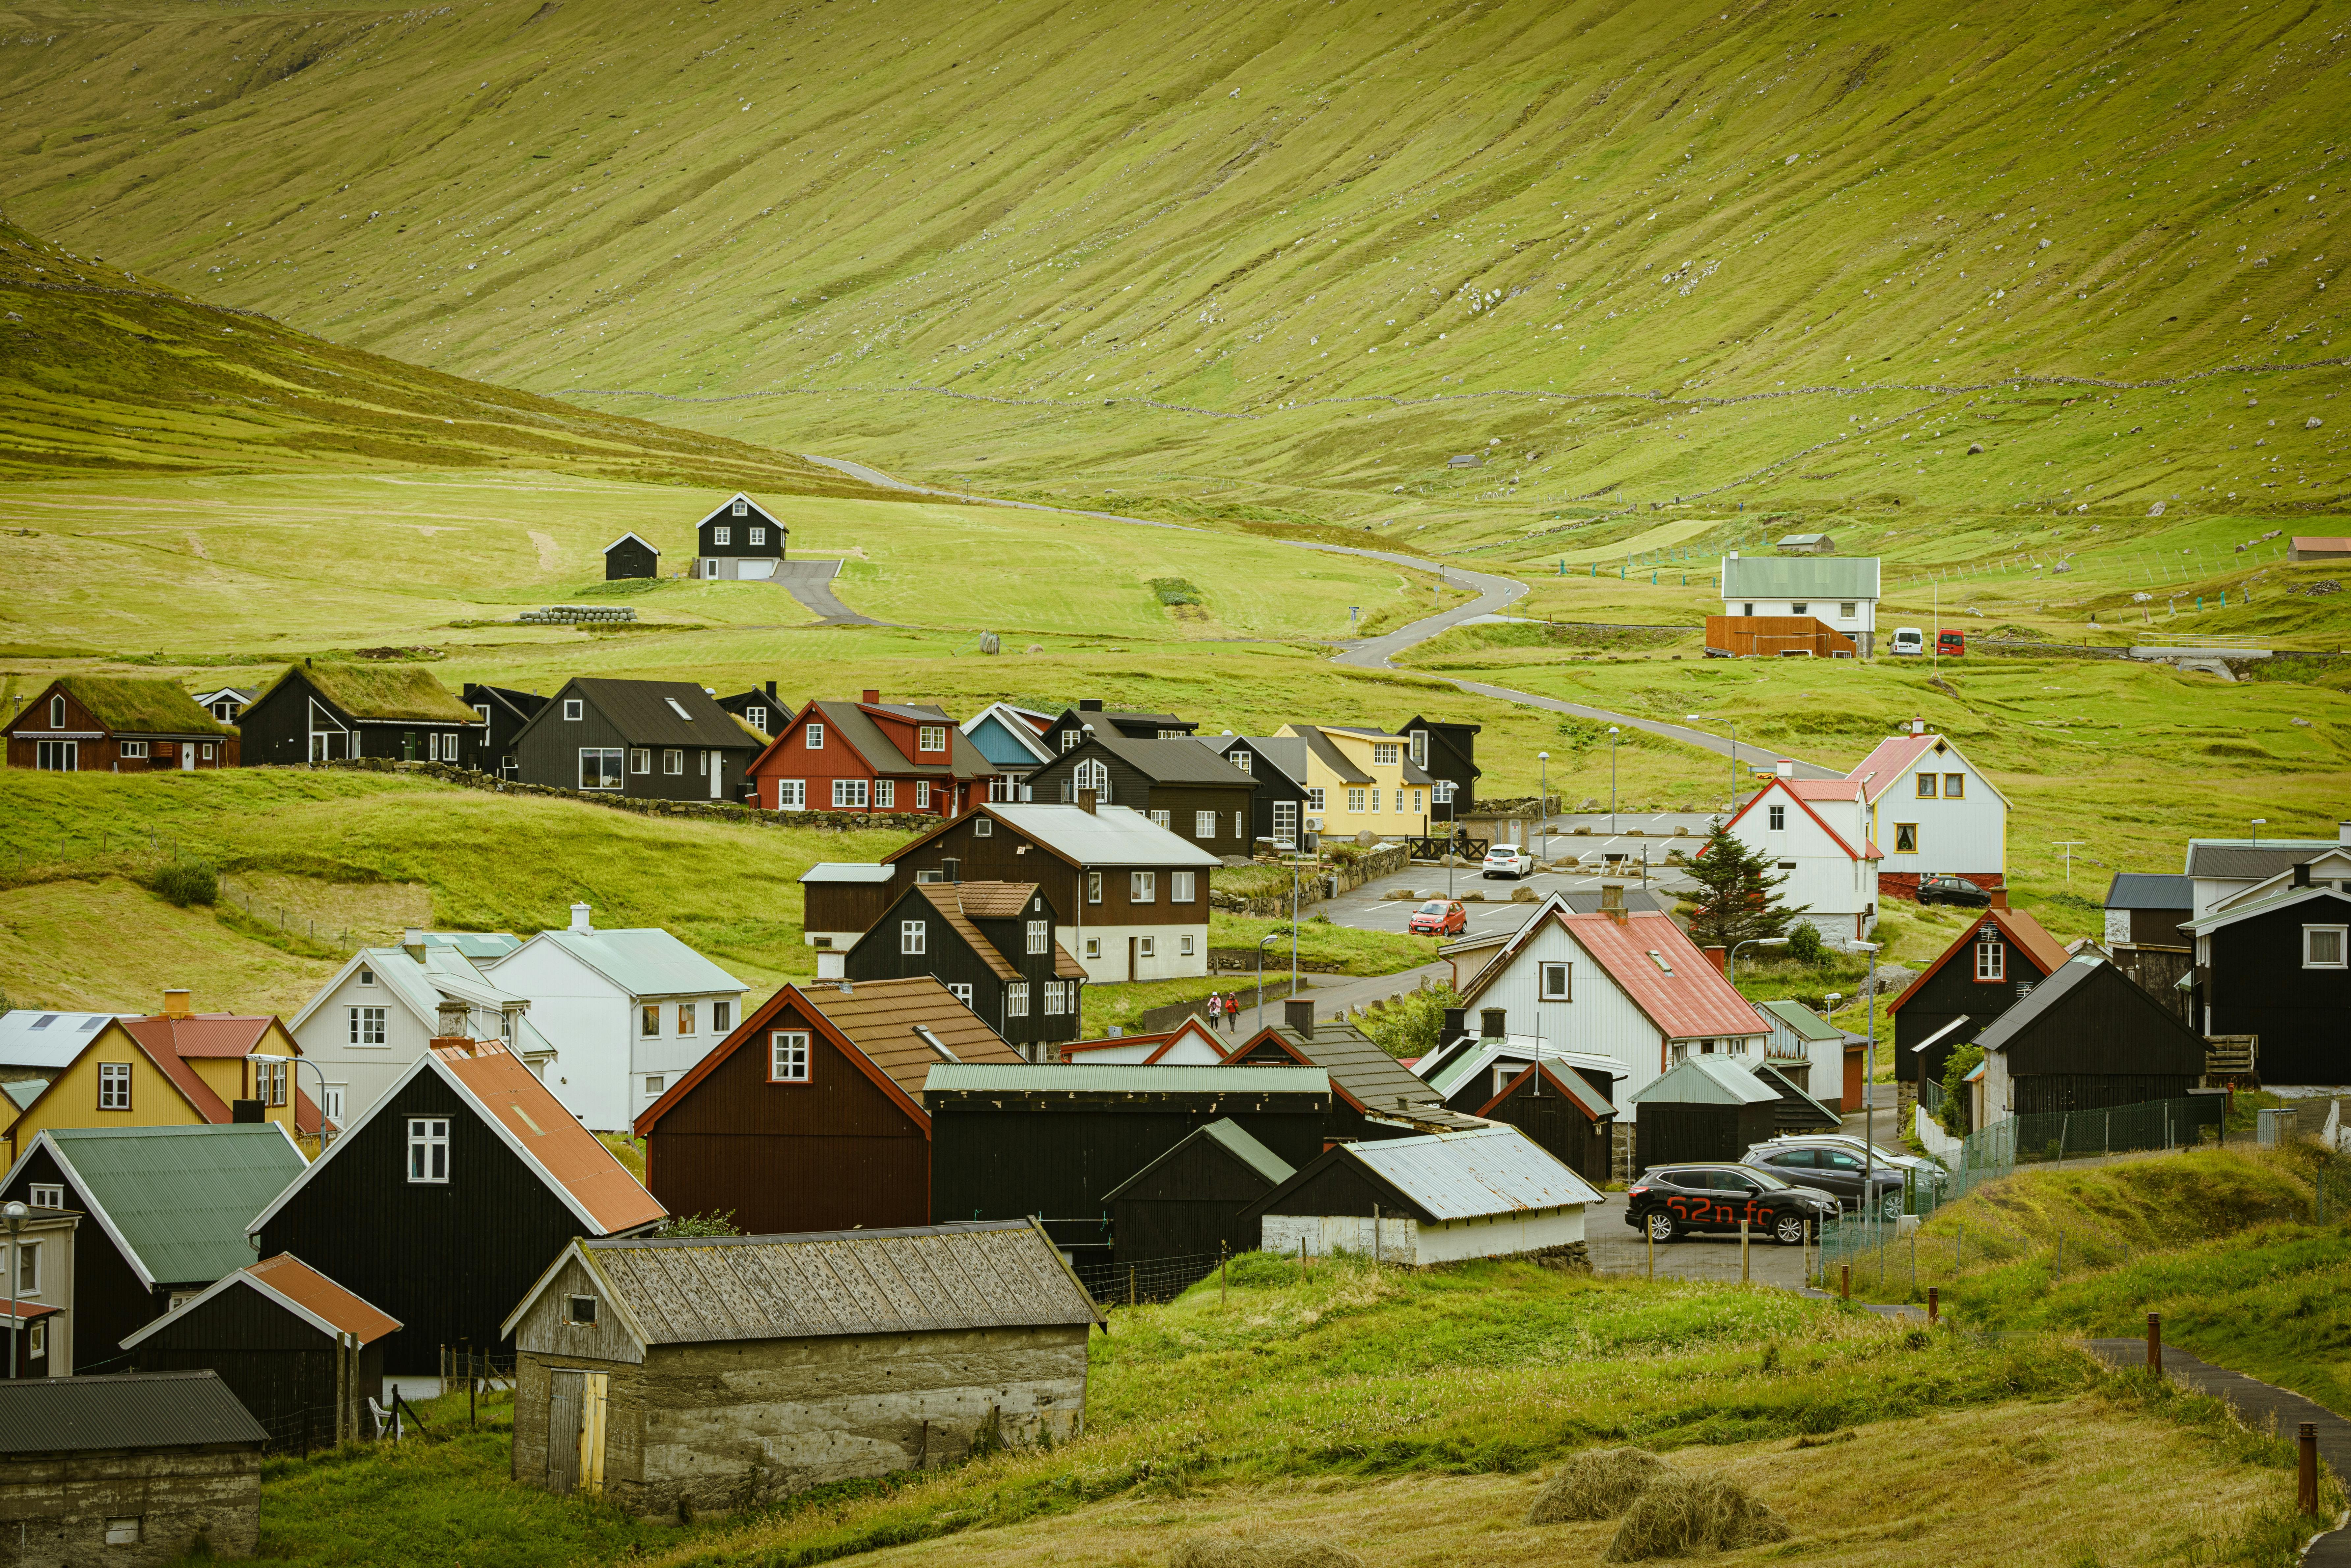 Image of a town in Faroe Islands